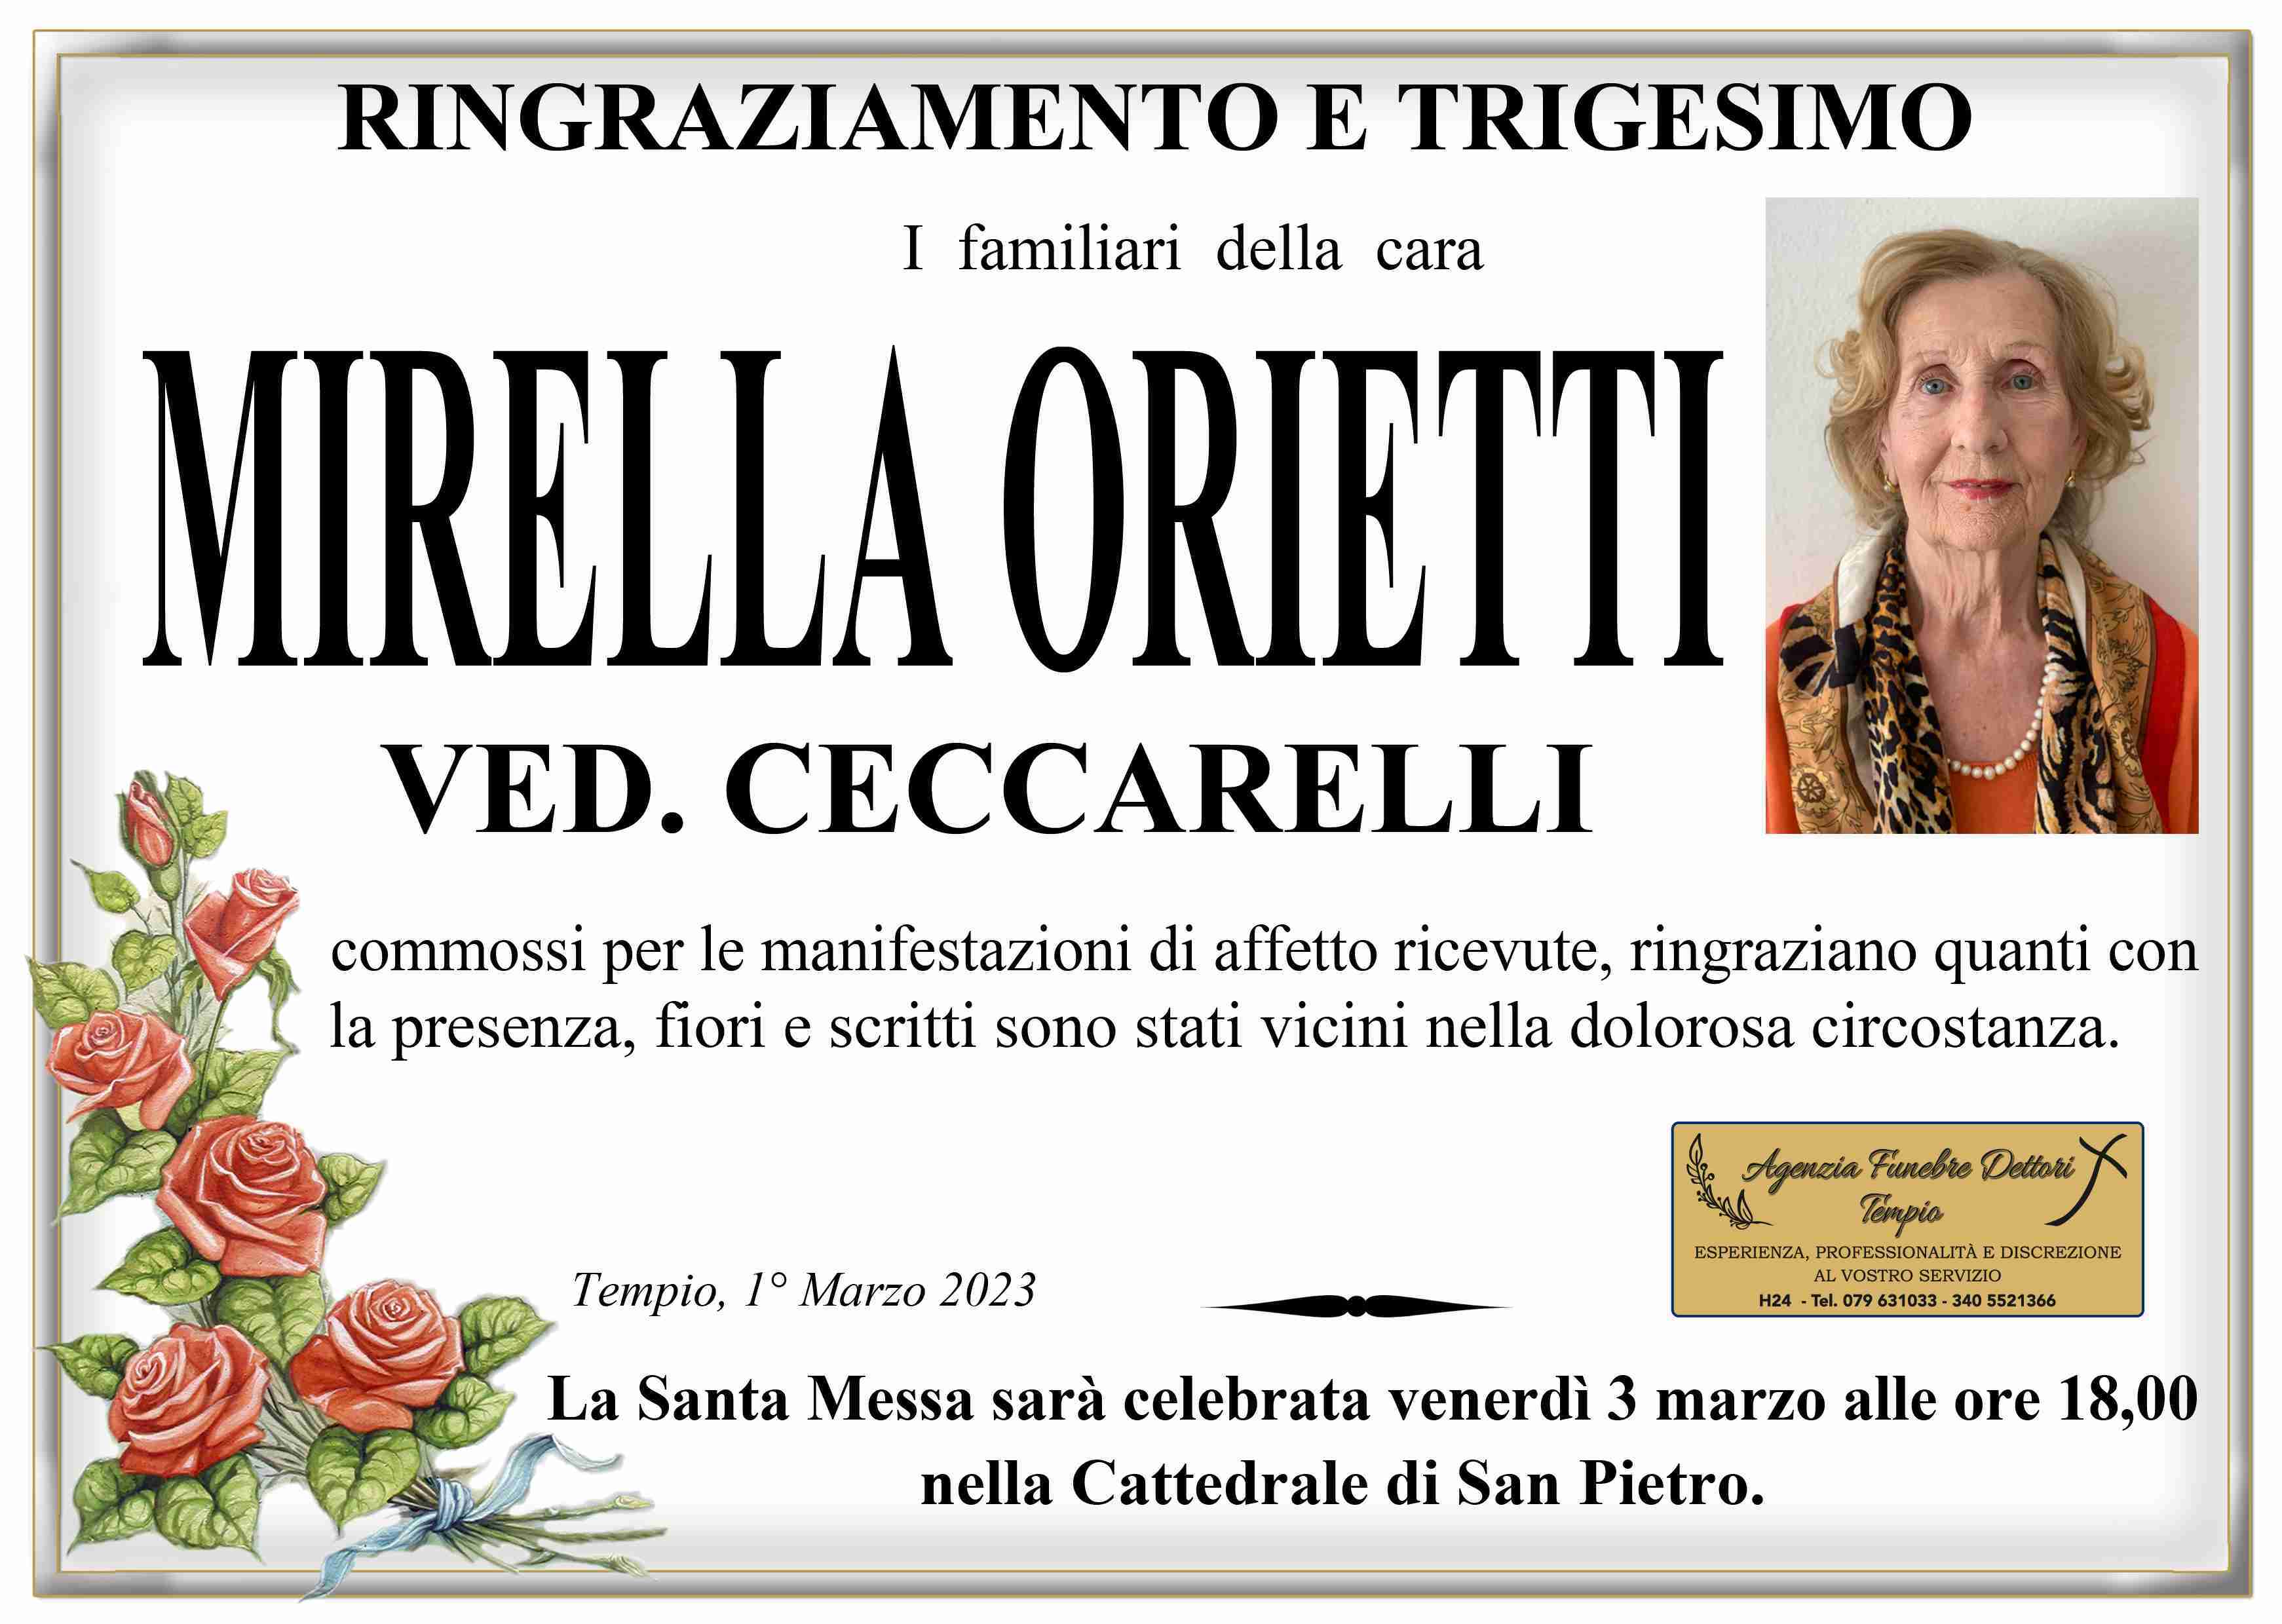 Mirella Orietti